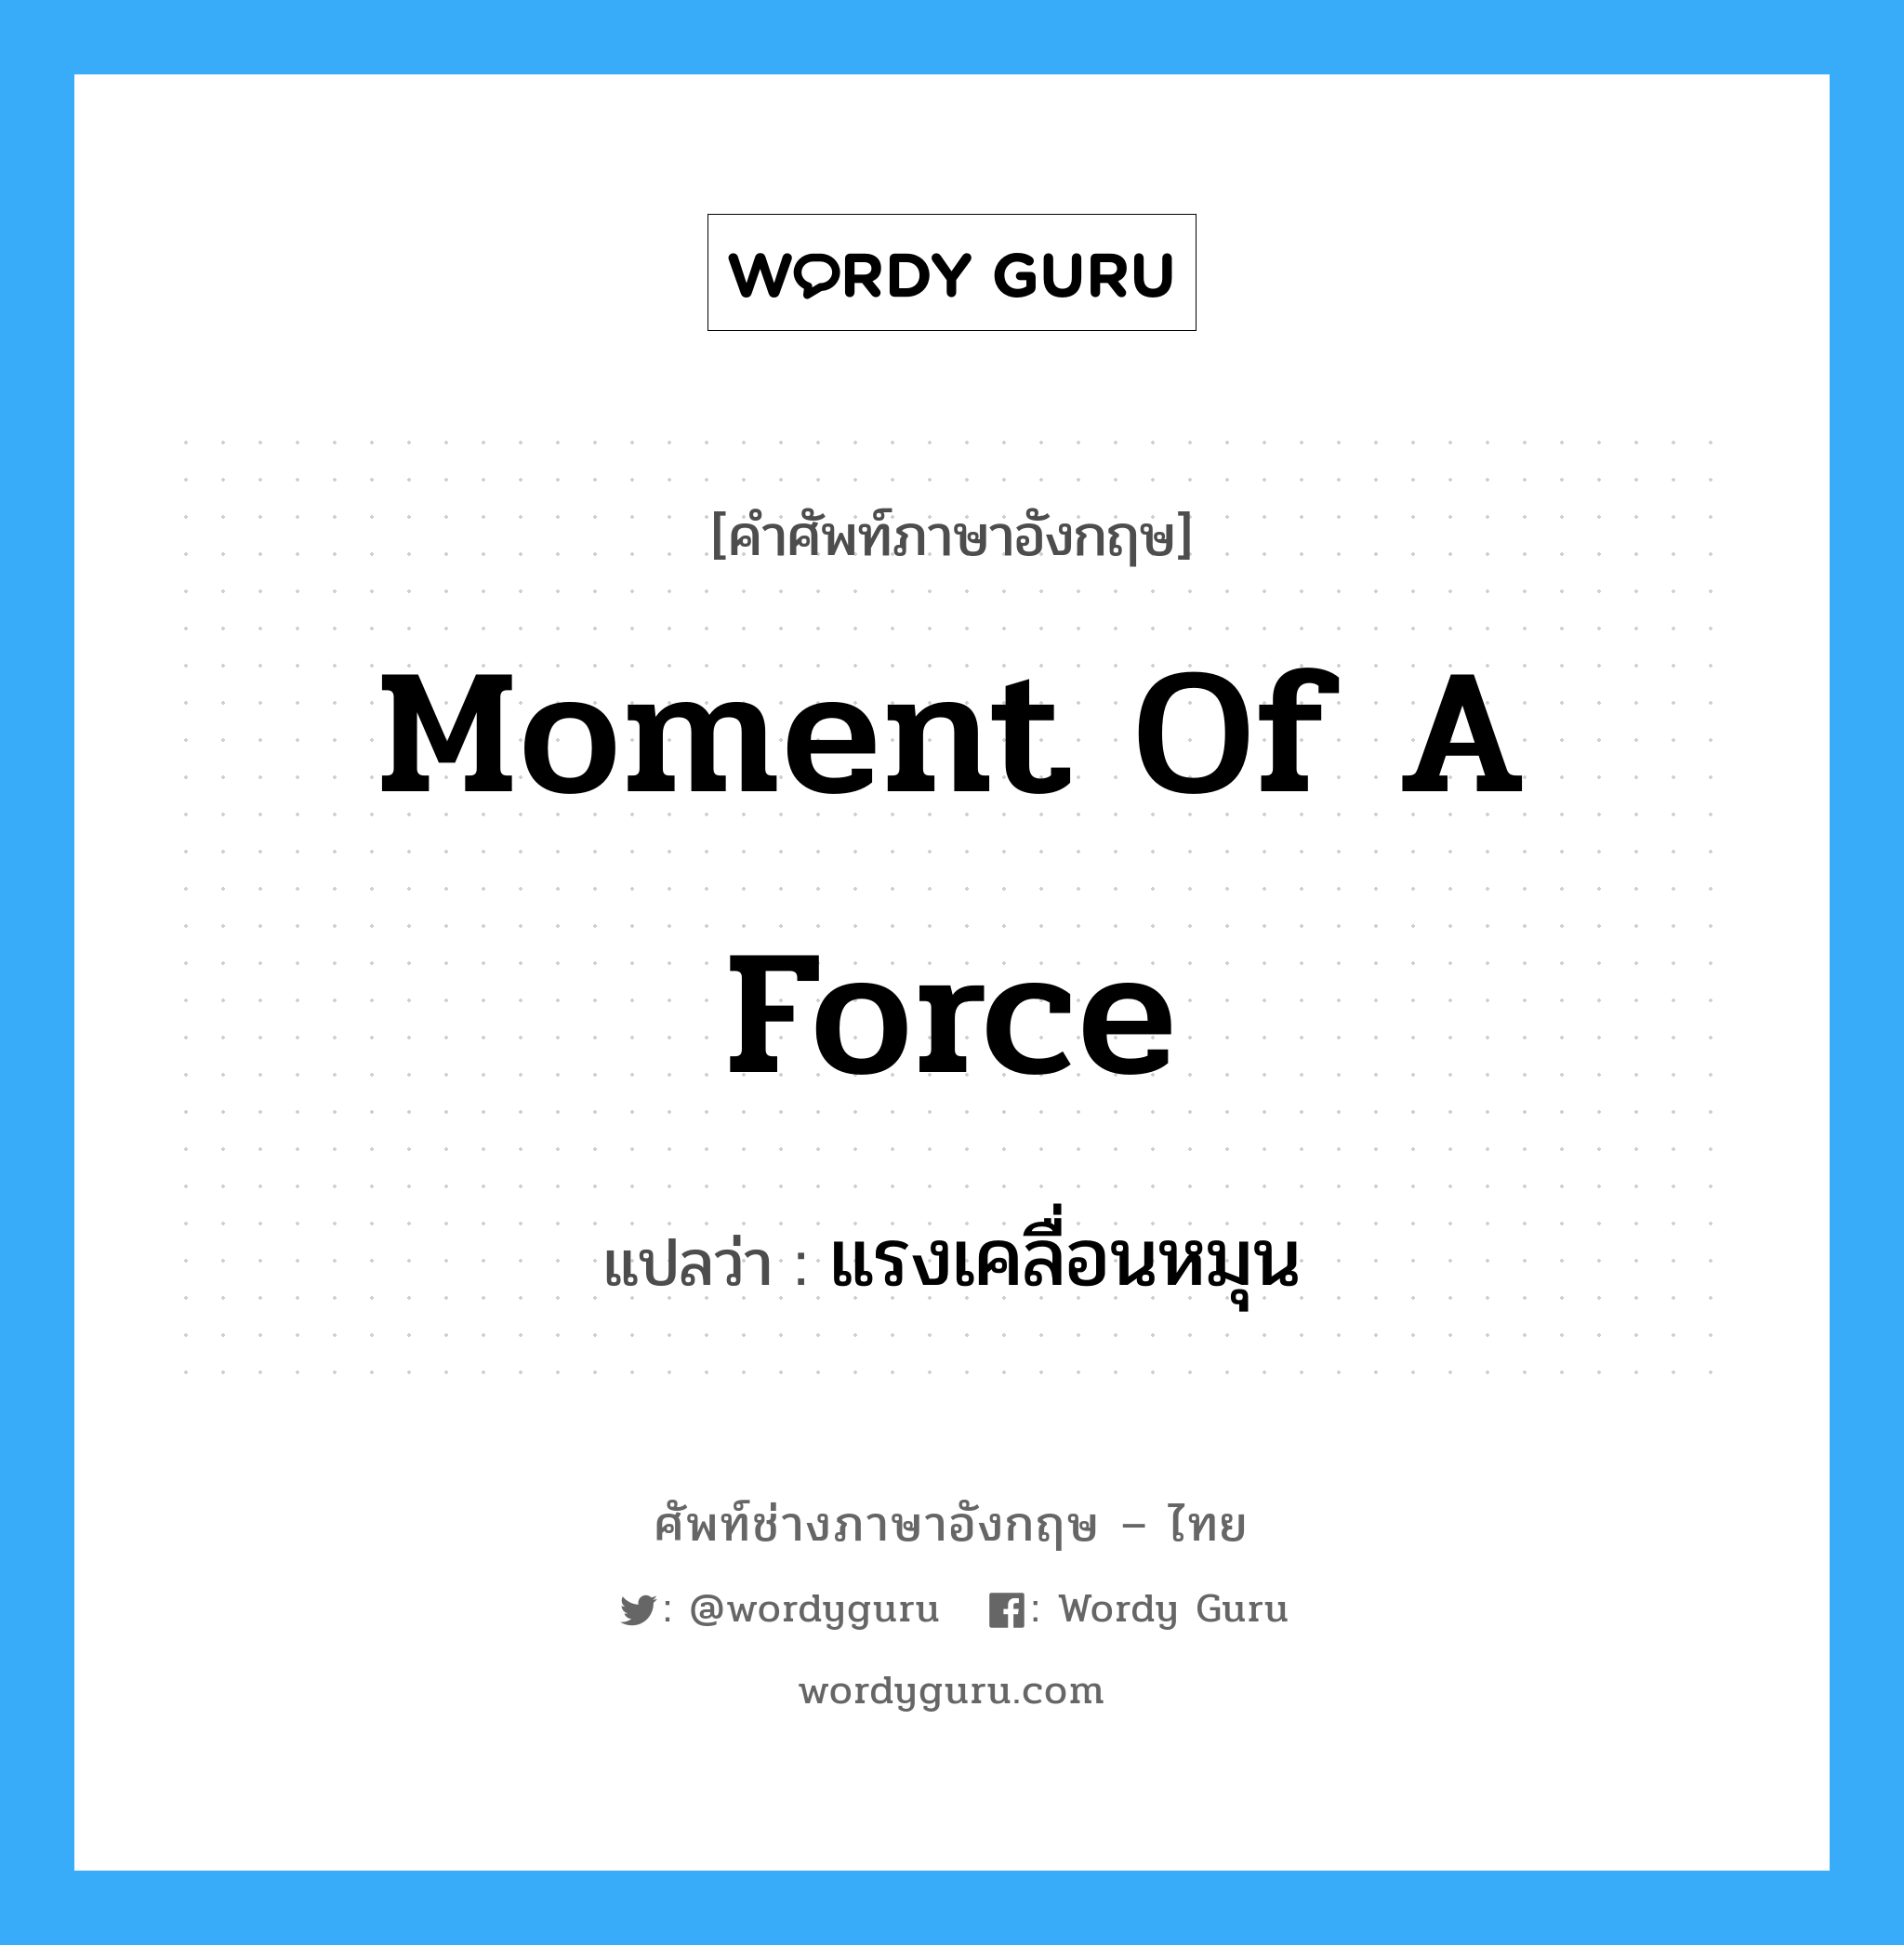 แรงเคลื่อนหมุน ภาษาอังกฤษ?, คำศัพท์ช่างภาษาอังกฤษ - ไทย แรงเคลื่อนหมุน คำศัพท์ภาษาอังกฤษ แรงเคลื่อนหมุน แปลว่า moment of a force